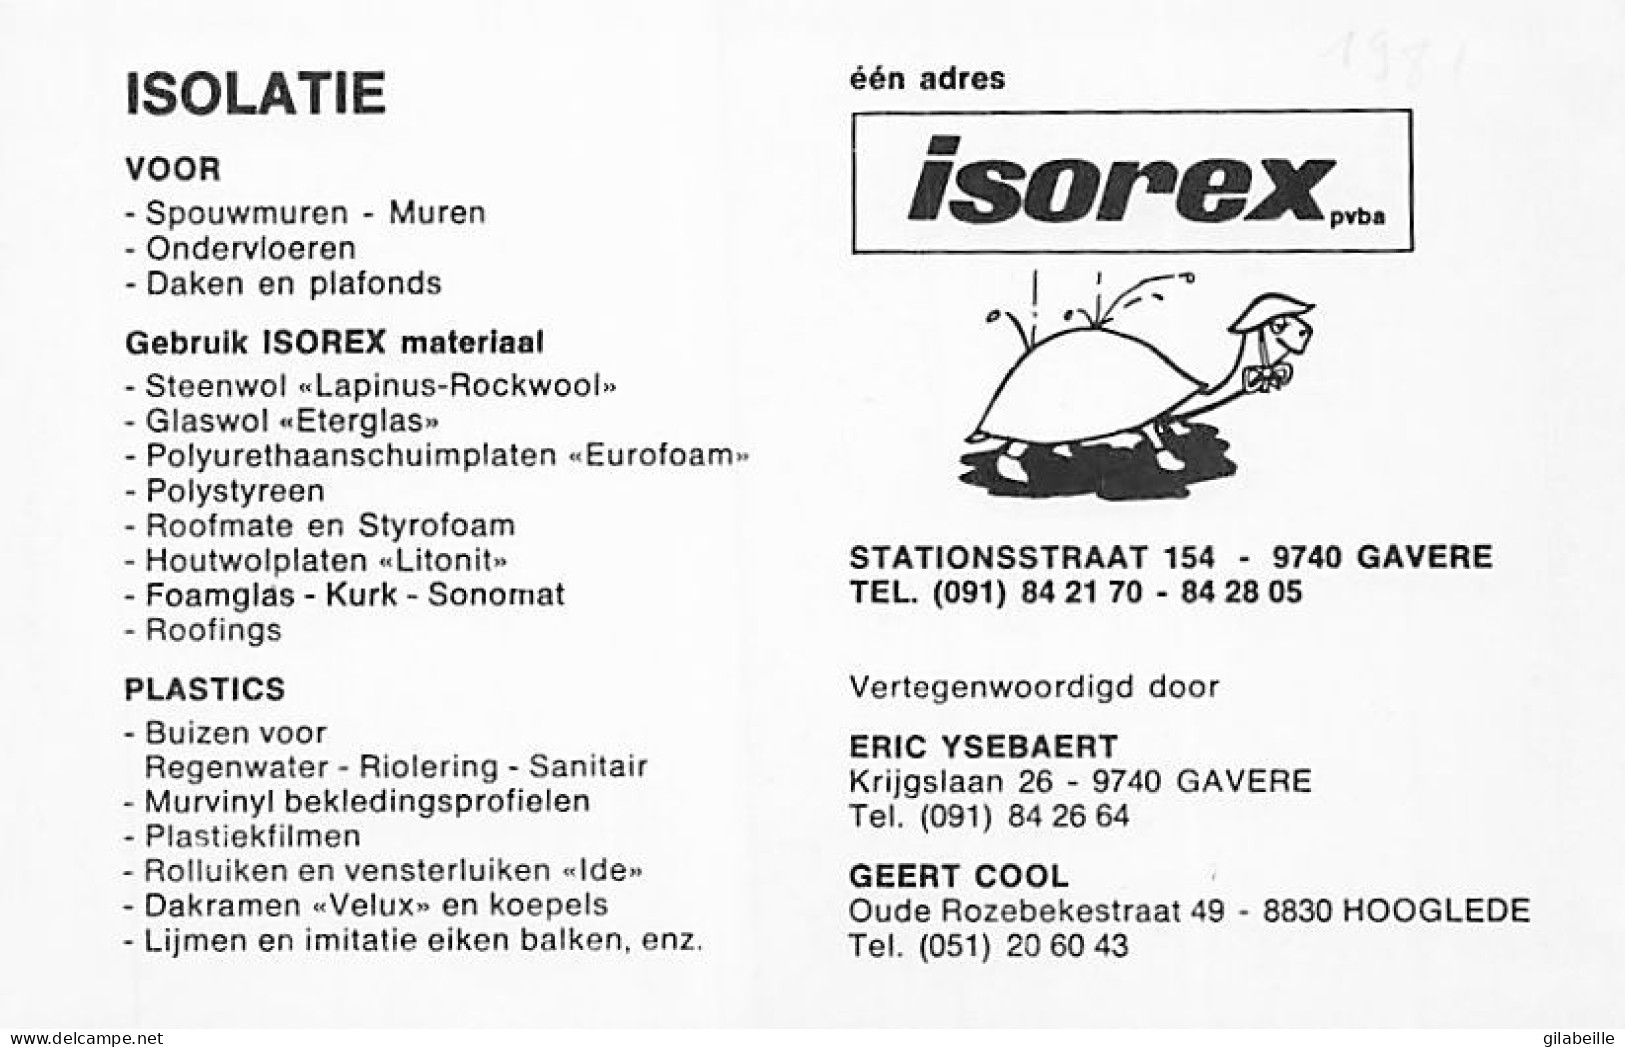 Velo - Cyclisme - Coureur Cycliste Belge Hugo Vergucht - Team Isorex - 1981  - Non Classificati